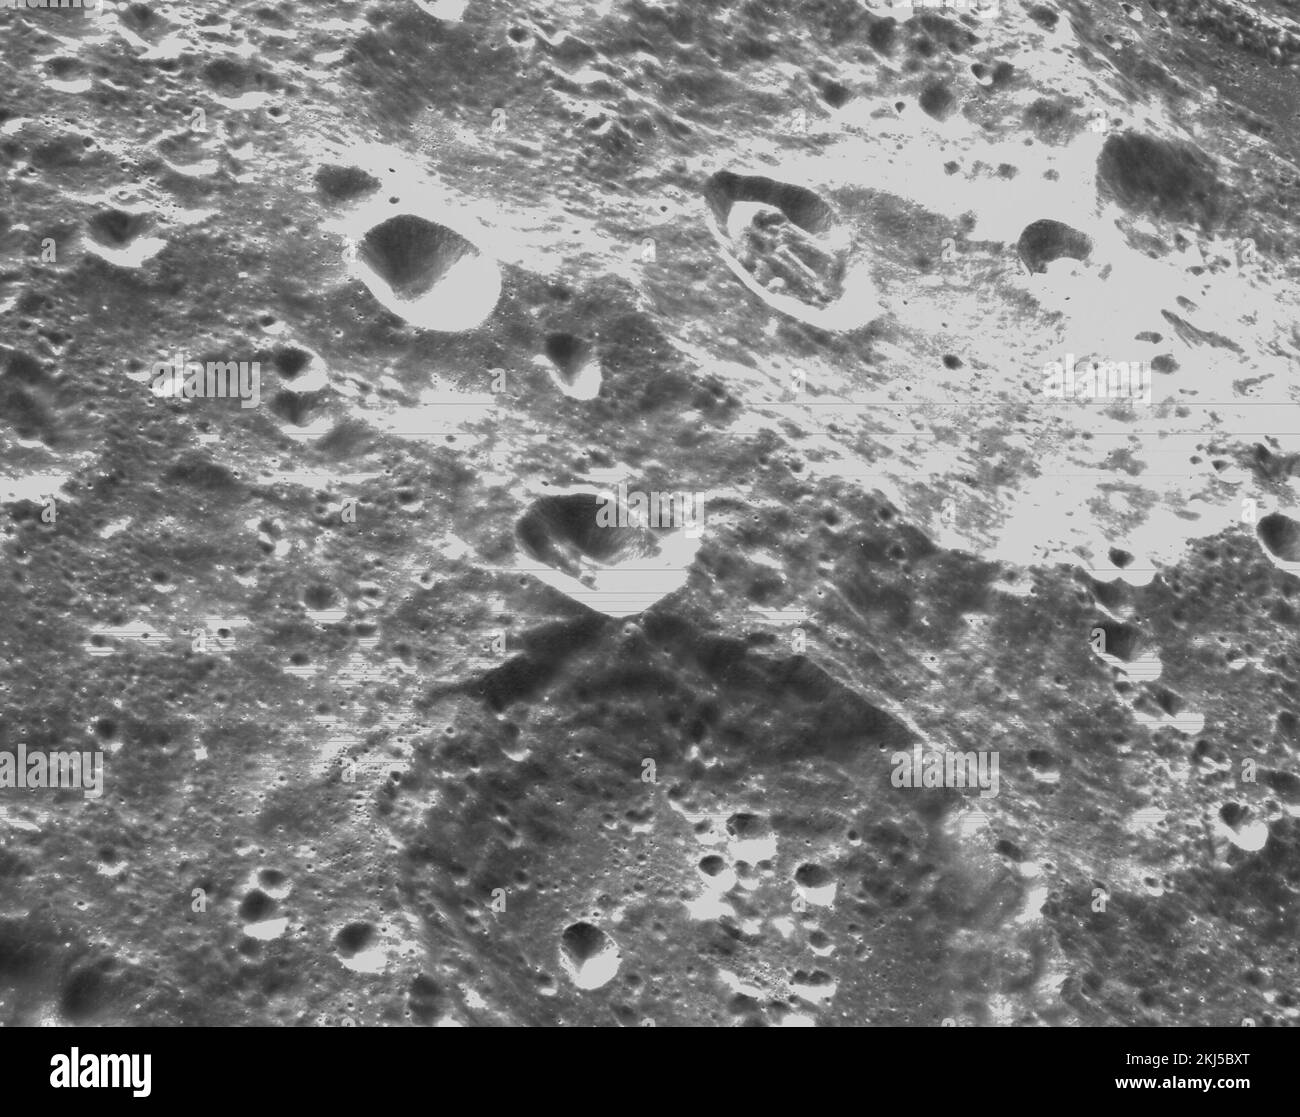 Órbita lunar, órbita terrestre. 21 de noviembre de 2022. Imágenes en blanco y negro de la superficie lunar mostrando cráteres capturados por la cámara óptica de navegación Orion durante el acercamiento más cercano a la Luna en el vuelo del sexto día de la misión Artemis I de la NASA, el 21 de noviembre de 2022, en órbita lunar. Crédito: NASA/NASA/Alamy Live News Foto de stock